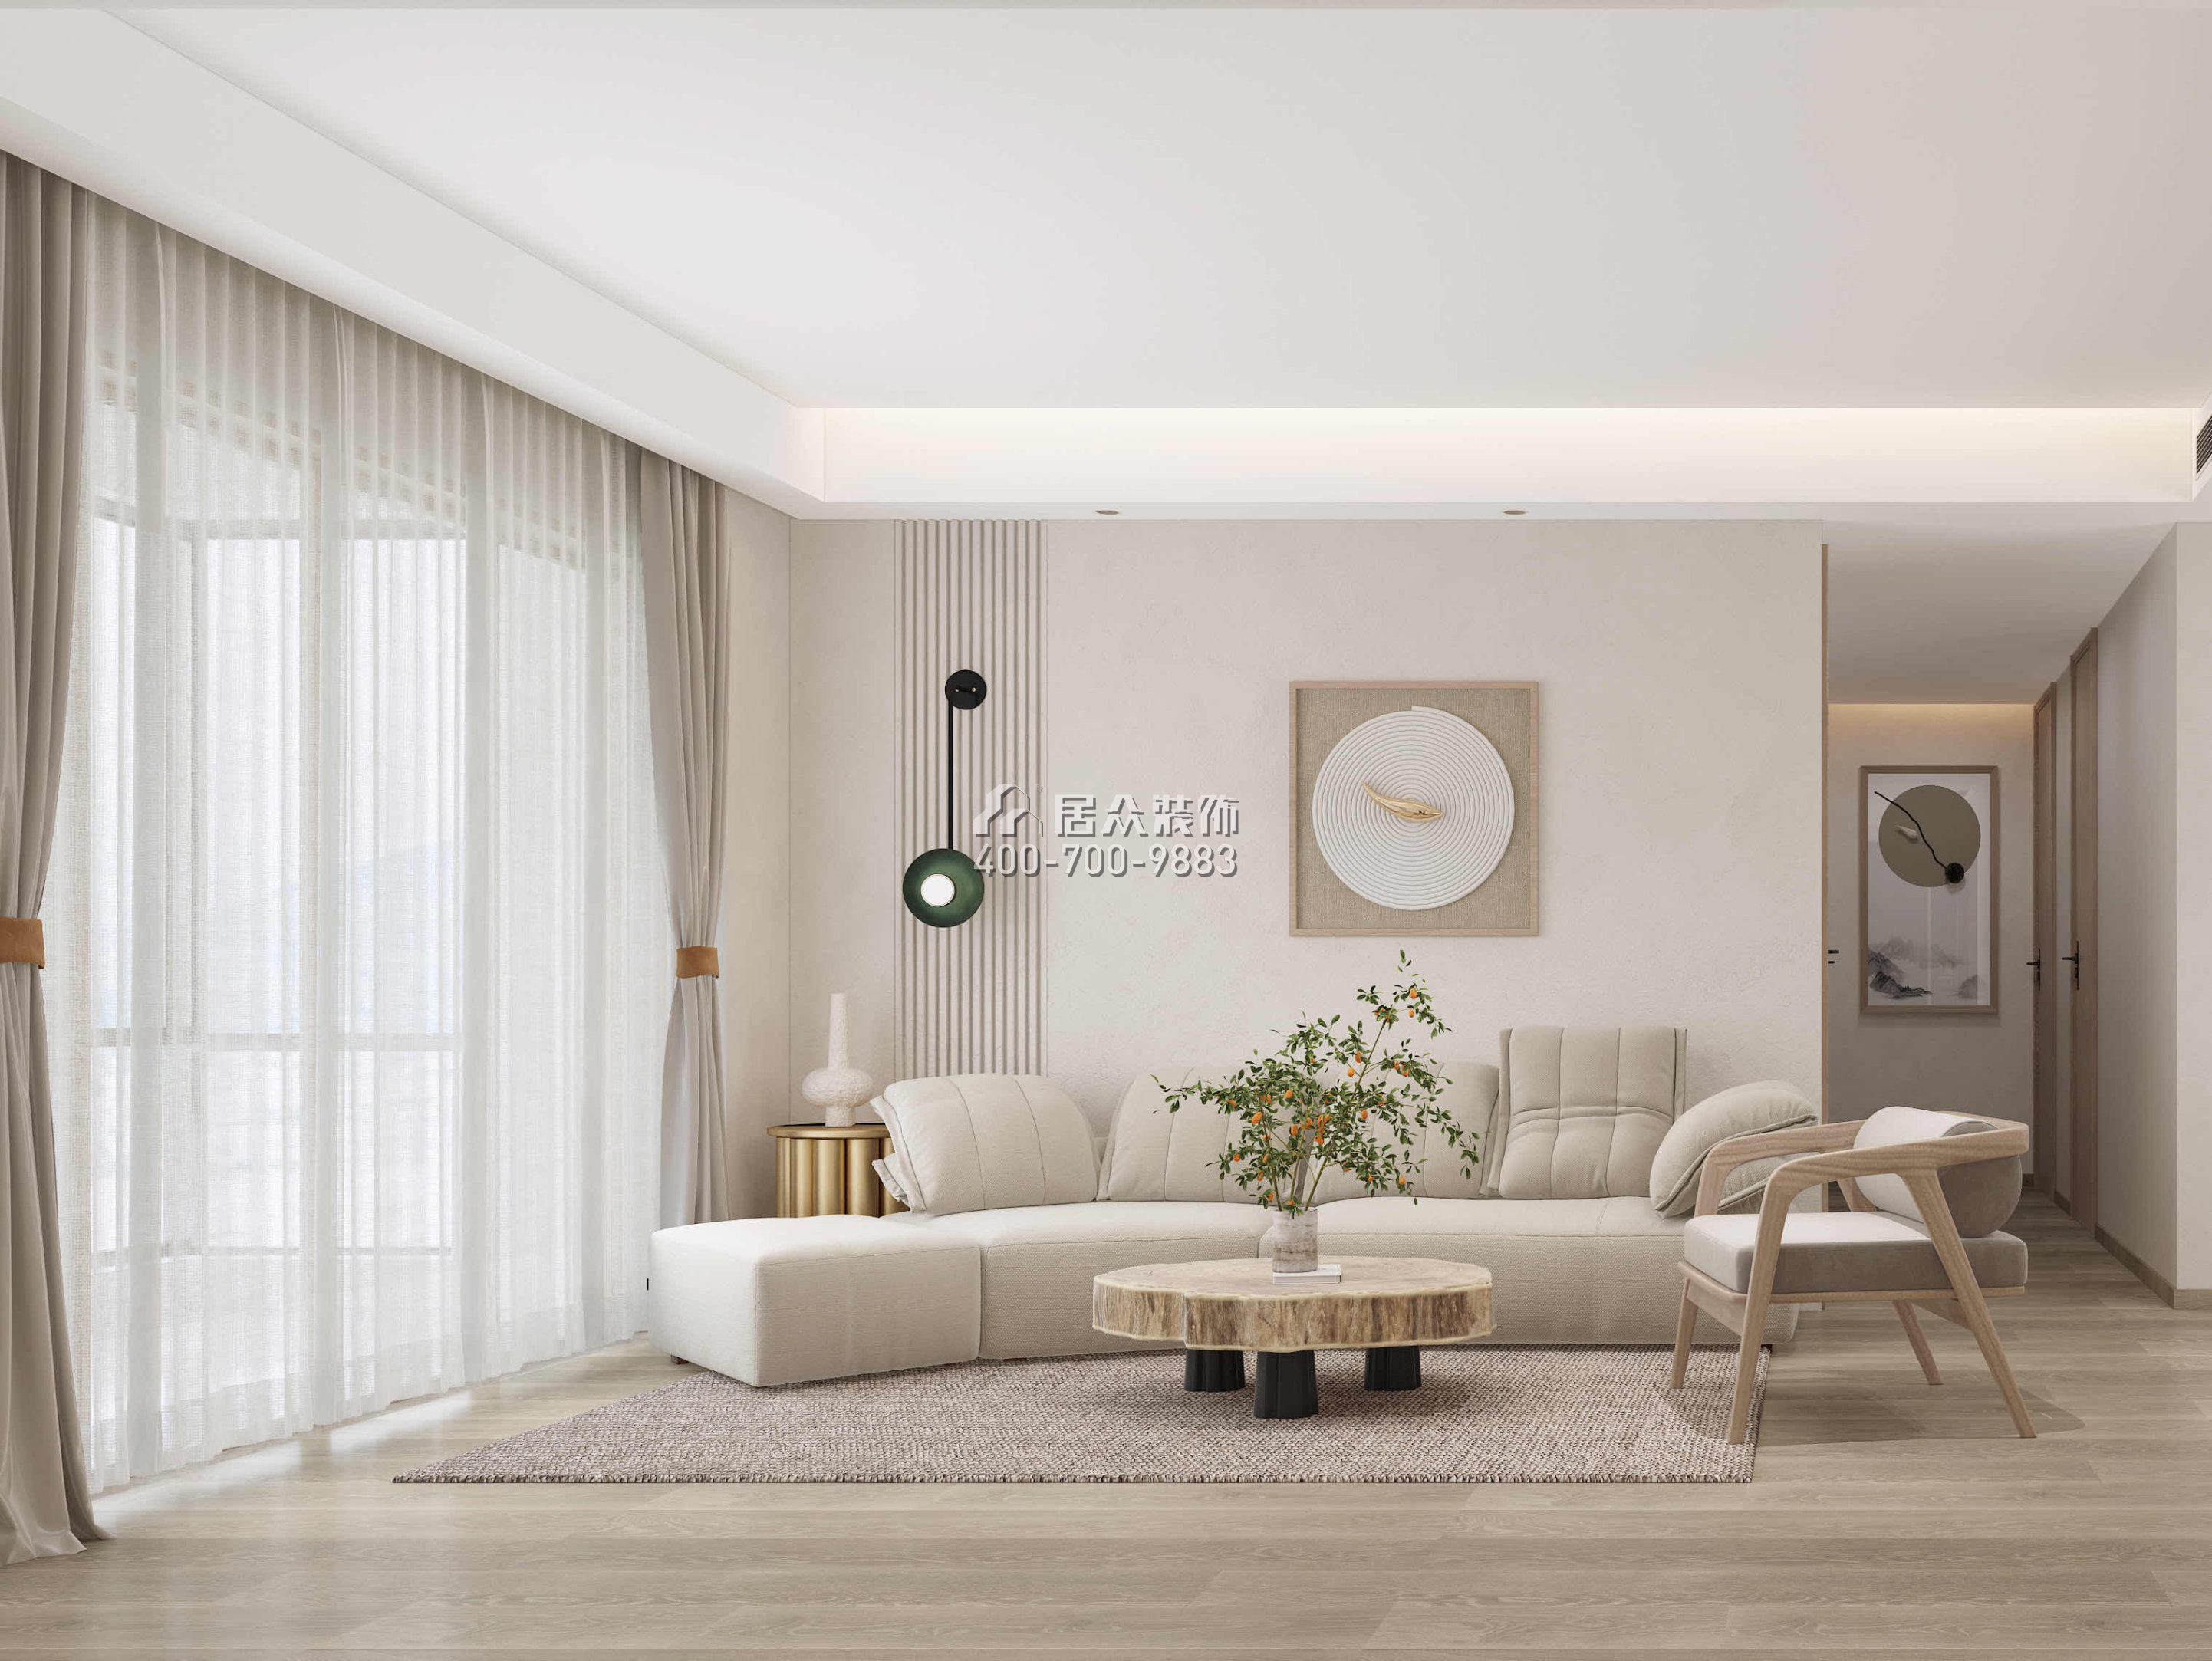 星河明居115平方米現代簡約風格平層戶型客廳裝修效果圖